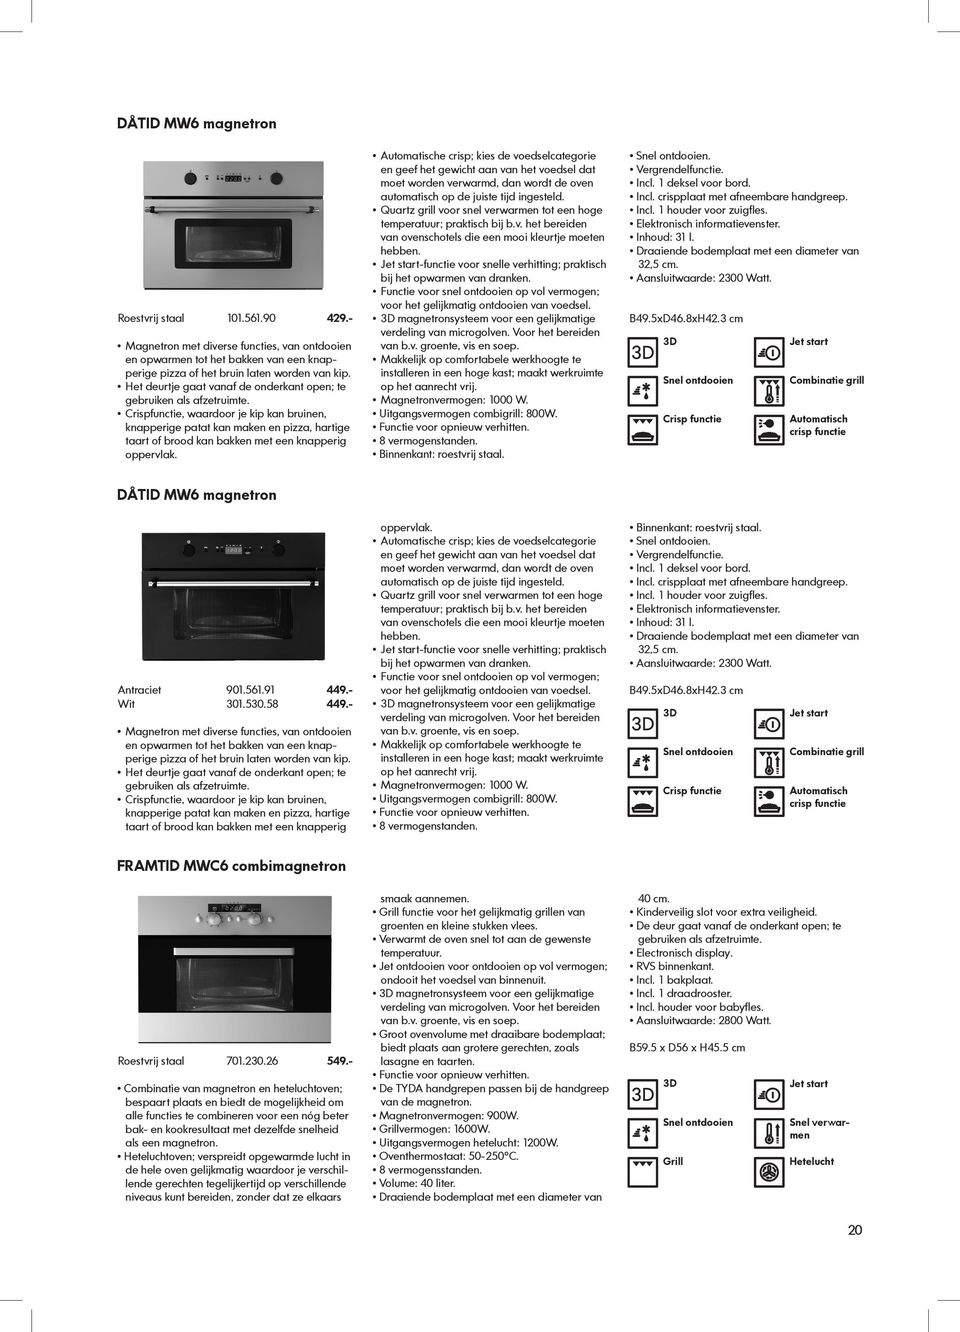 misdrijf lezing groot IKEA apparatuur ontworpen voor elke dag - PDF Free Download